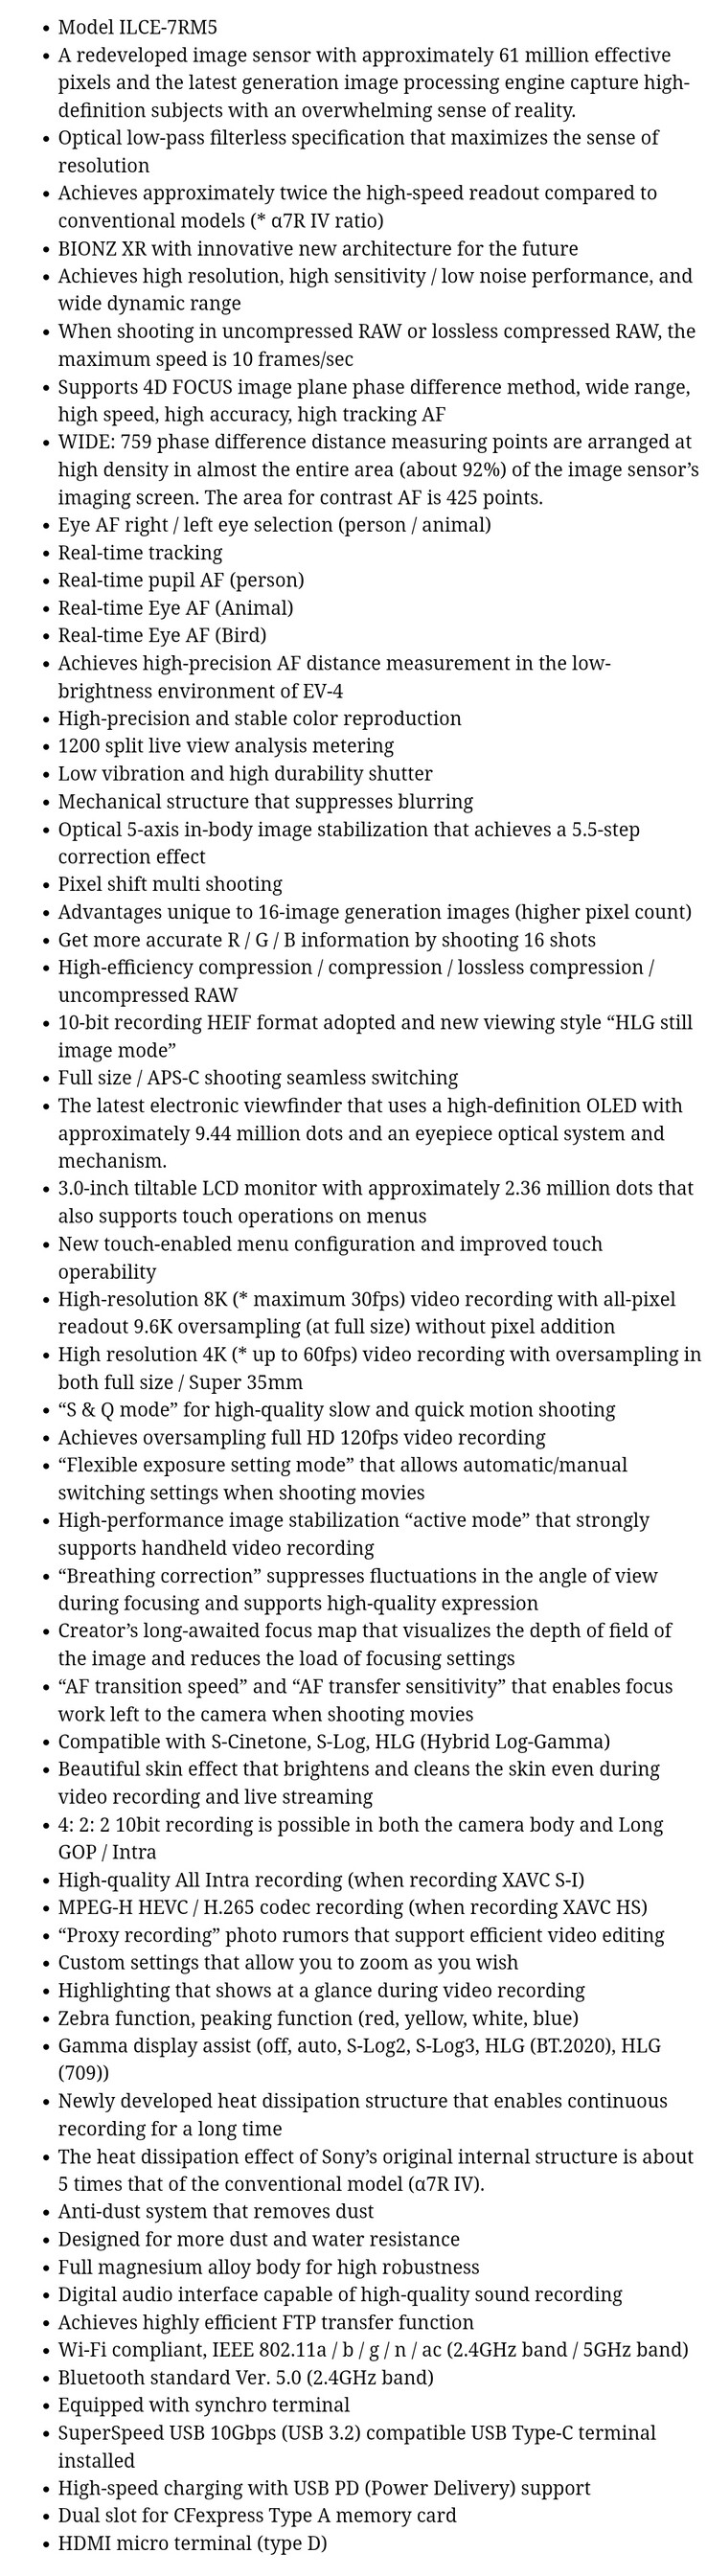 La supuesta lista de especificaciones de la Sony a7R V al completo. (Fuente: PhotoRumors)